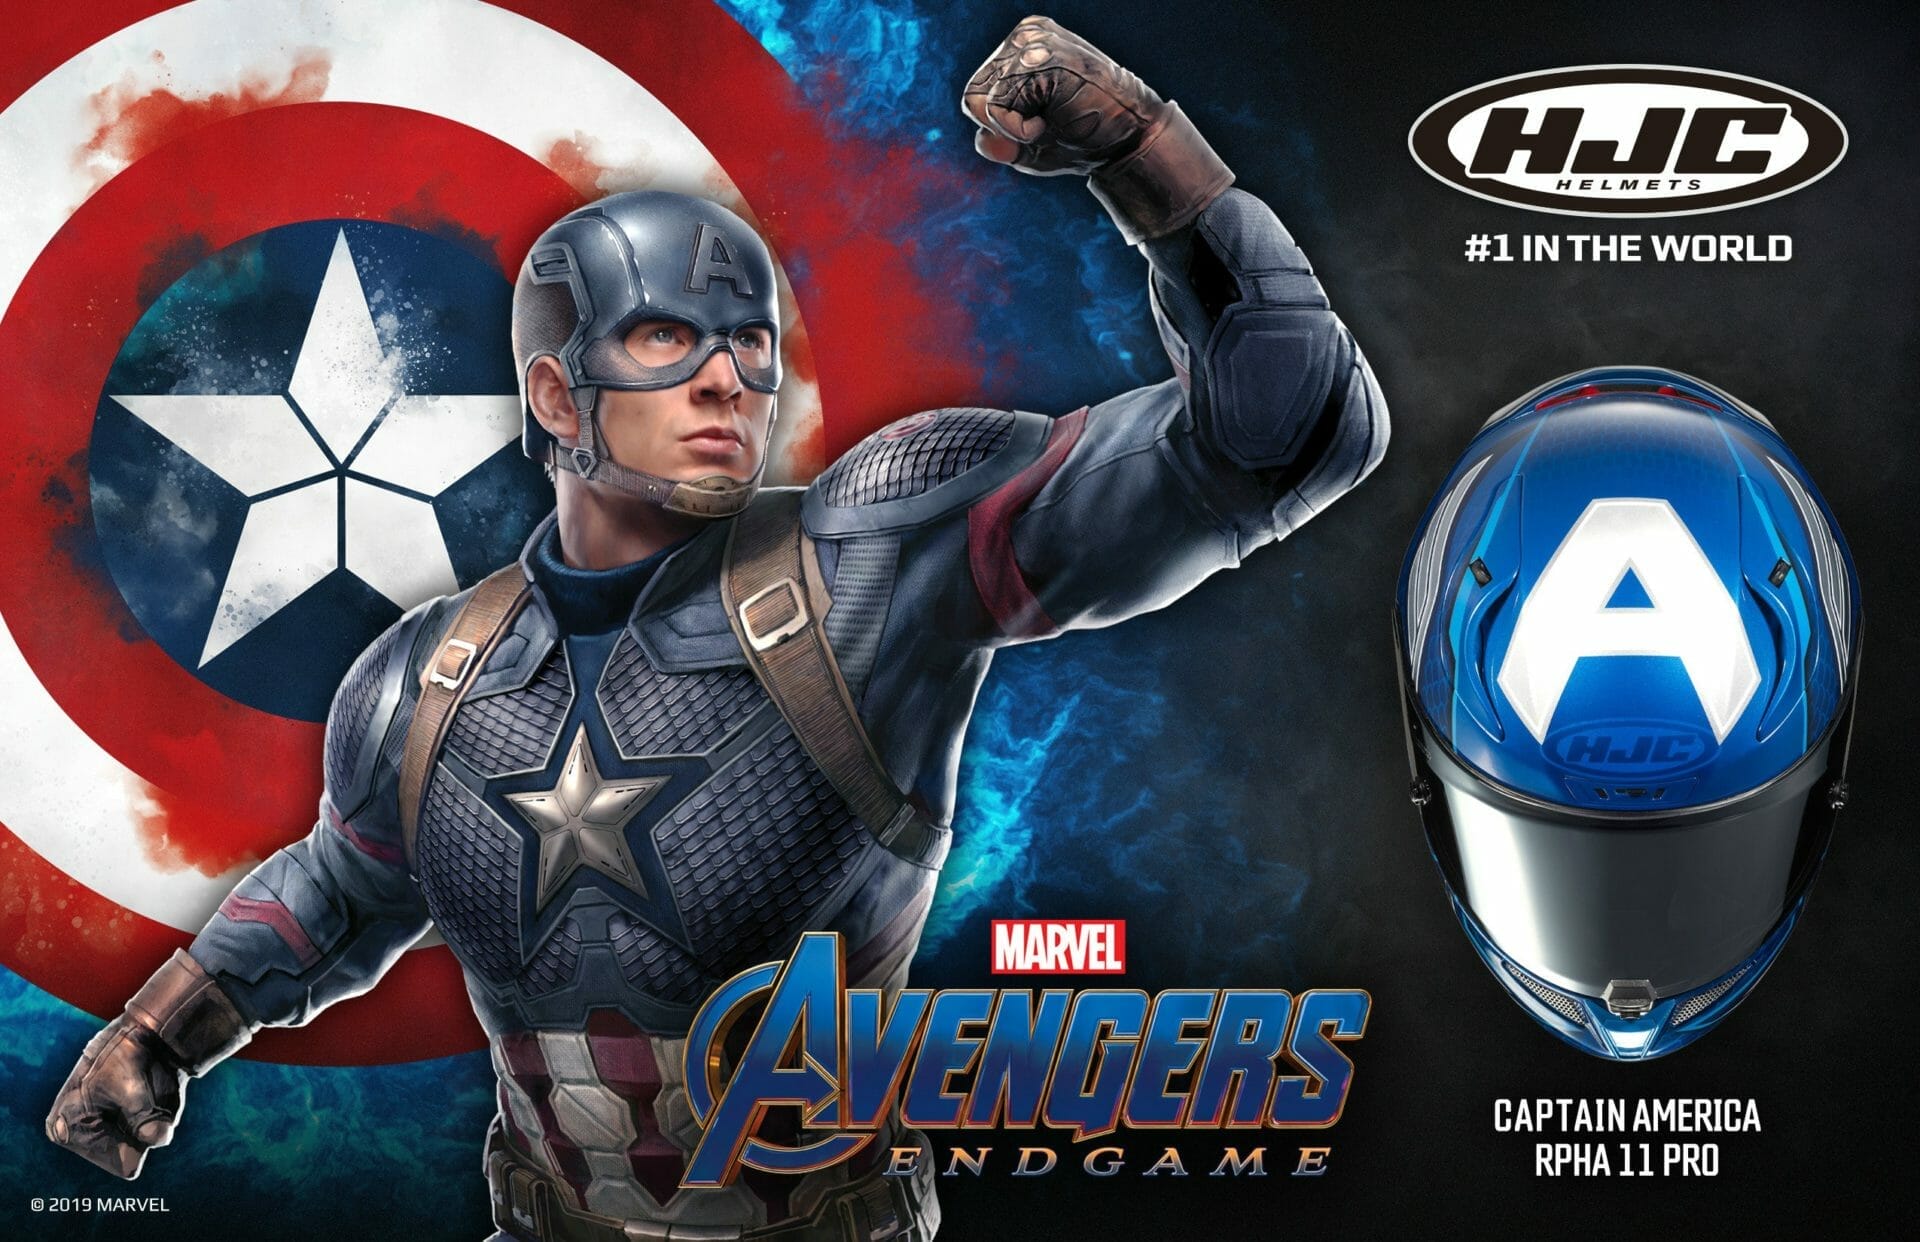 New Captain America helmet from HJC